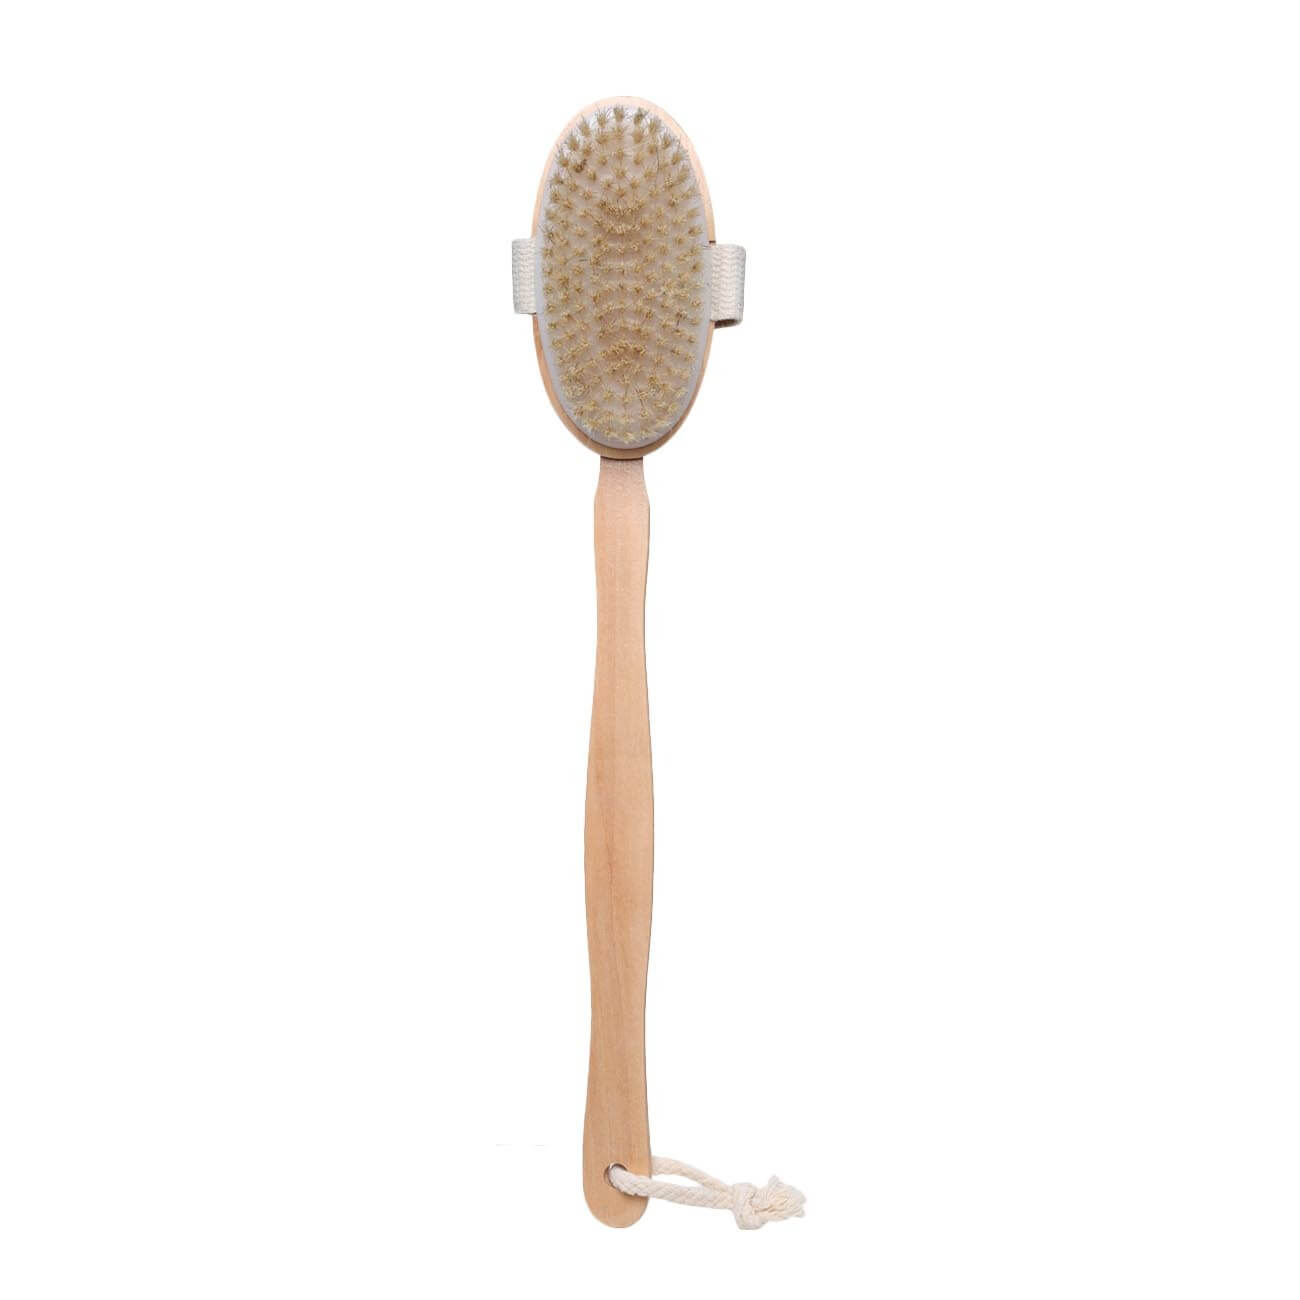 Щетка для сухого массажа, 40 см, с держателем, дерево/нейлон, Bamboo spa щетка сметка для удаления волос